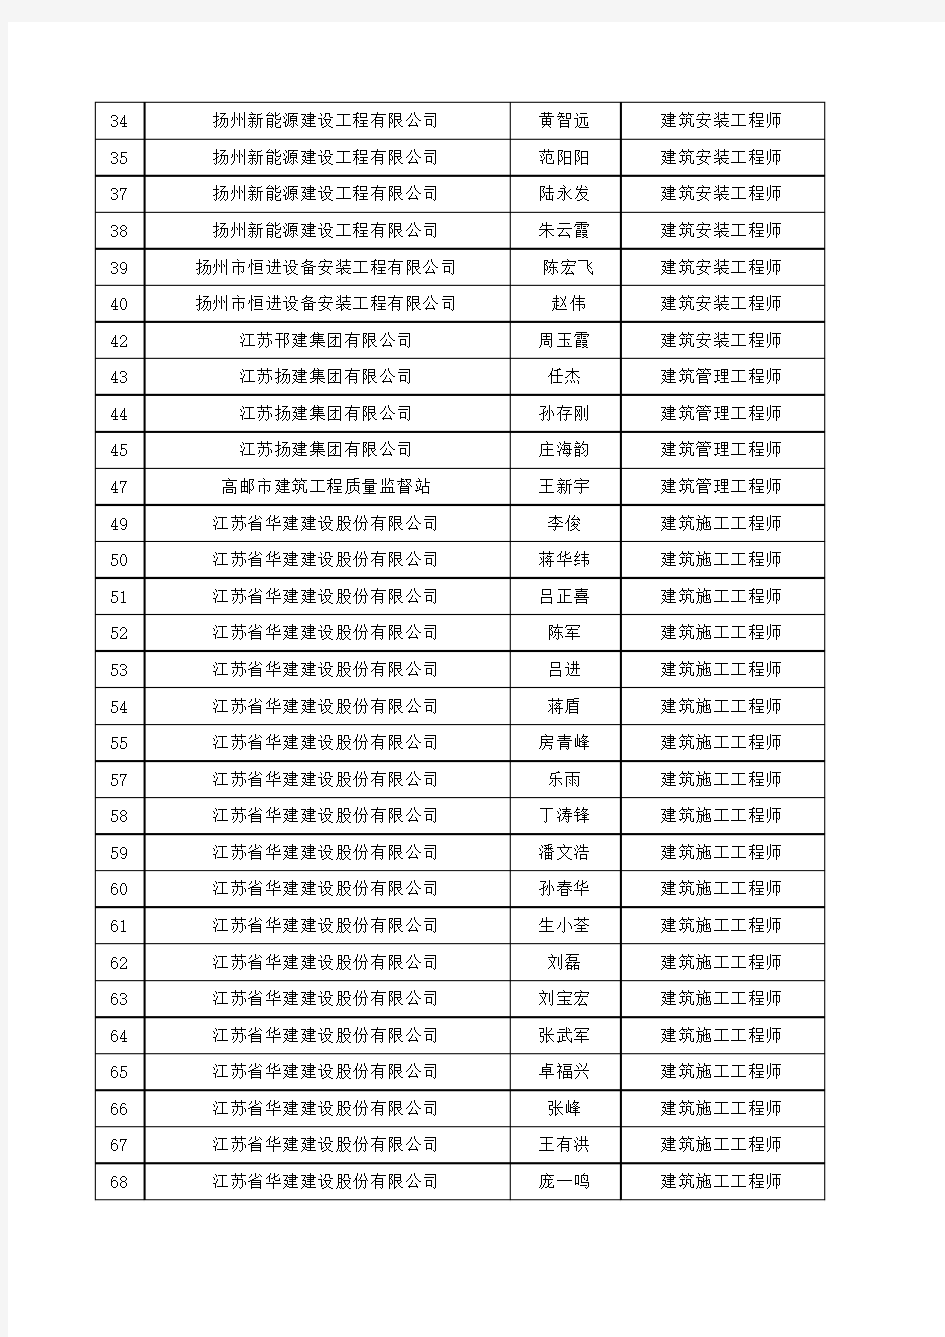 2015年度扬州市建筑工程中级职称通过人员名单公示